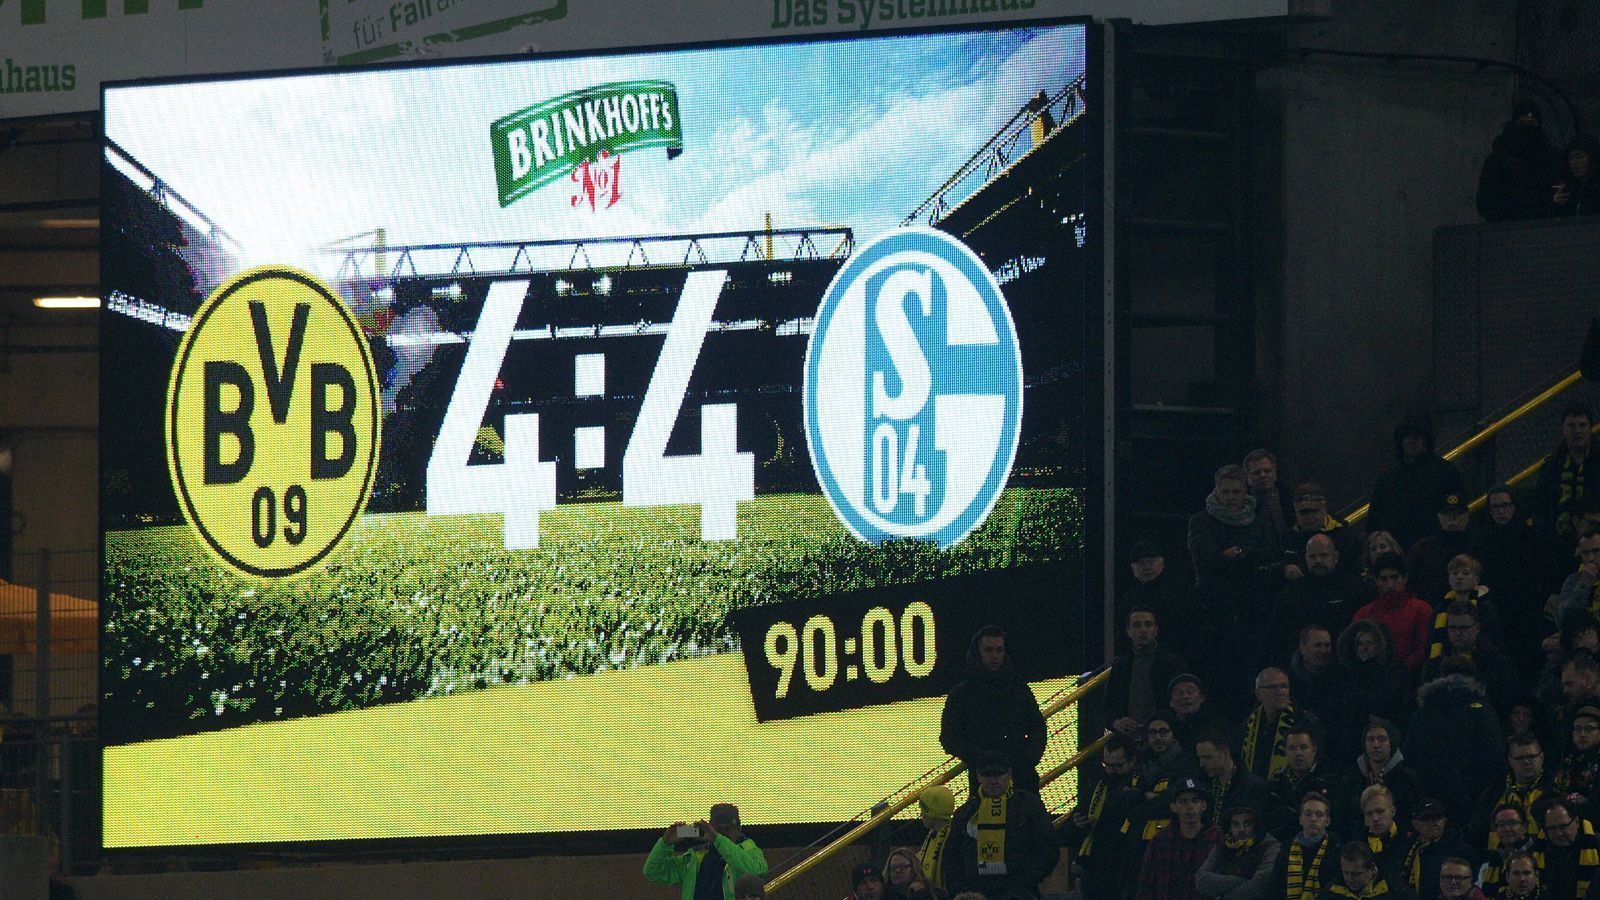 
                <strong>Rückspiel am Dortmund - Schalke am 31. Spieltag </strong><br>
                Vielleicht das Spiel des Jahrzehnts. Auf alle Fälle das spektakulärste Derby, das sich die Schwarzgelben und die Königsblauen in den letzten 40 Jahren geliefert haben. Zur Pause führt Dortmund 4:0 und brilliert. Danach geht beim BVB nichts mehr, Schalke schlägt zurück und "gewinnt" mit 4:4. Wird es am 31. Spieltag (26. bis 29. April) ähnlich dramatisch?
              